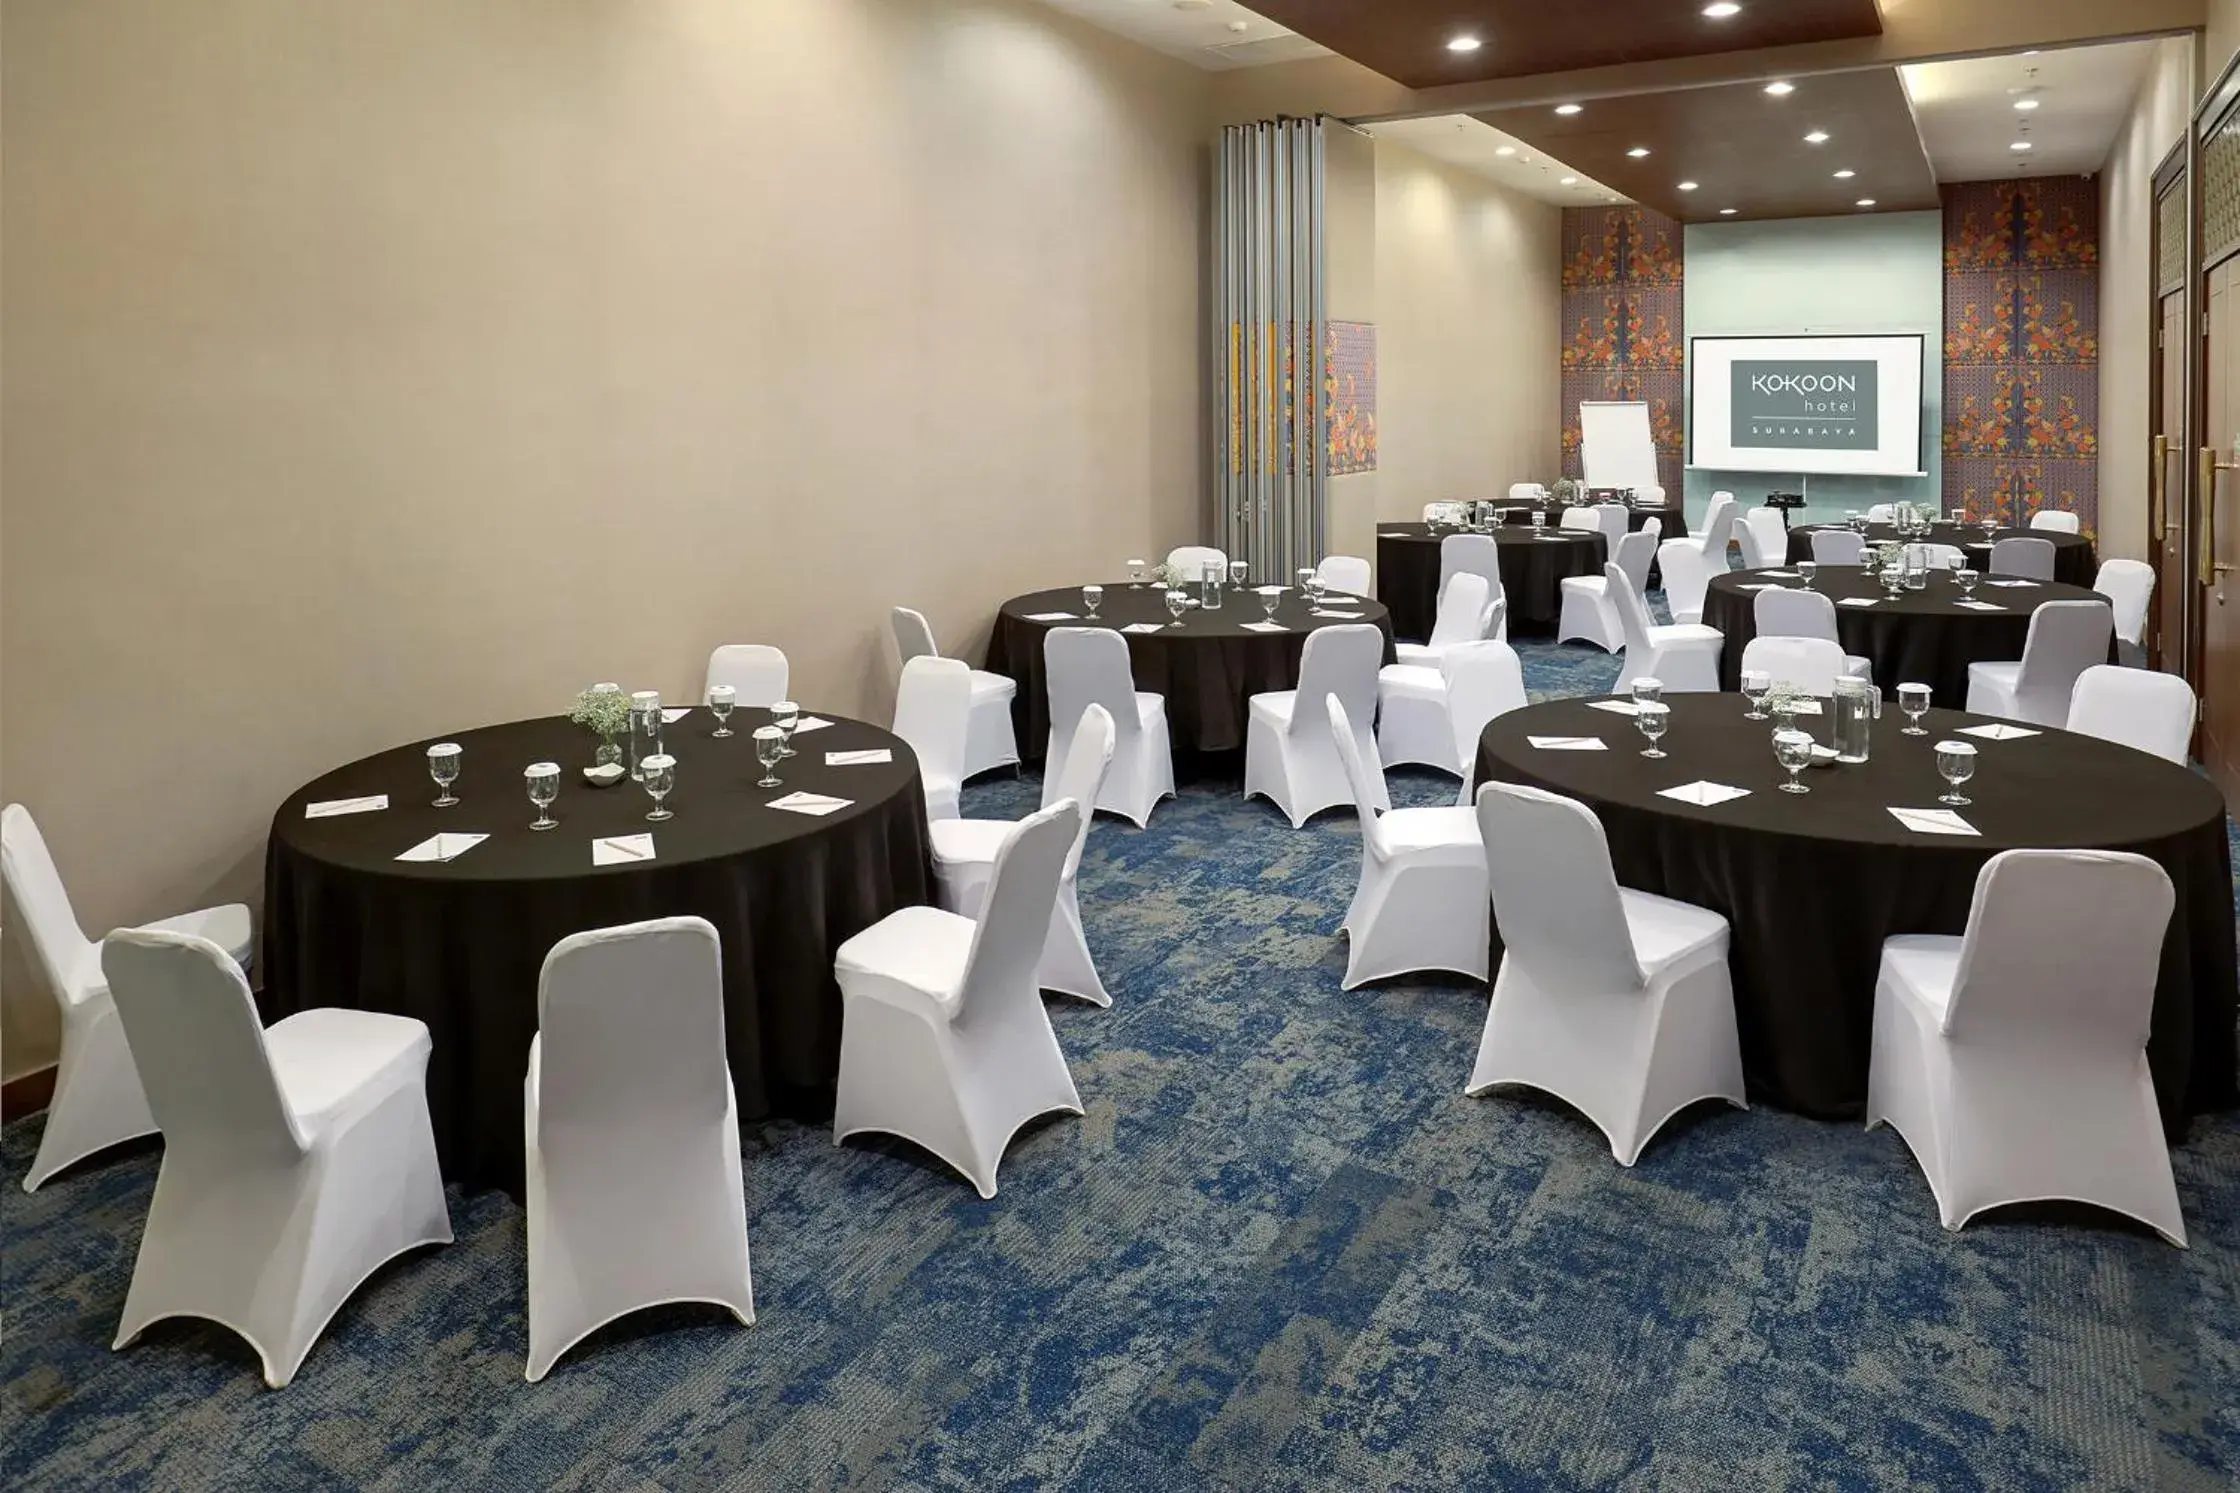 Banquet/Function facilities, Banquet Facilities in Kokoon Hotel Surabaya